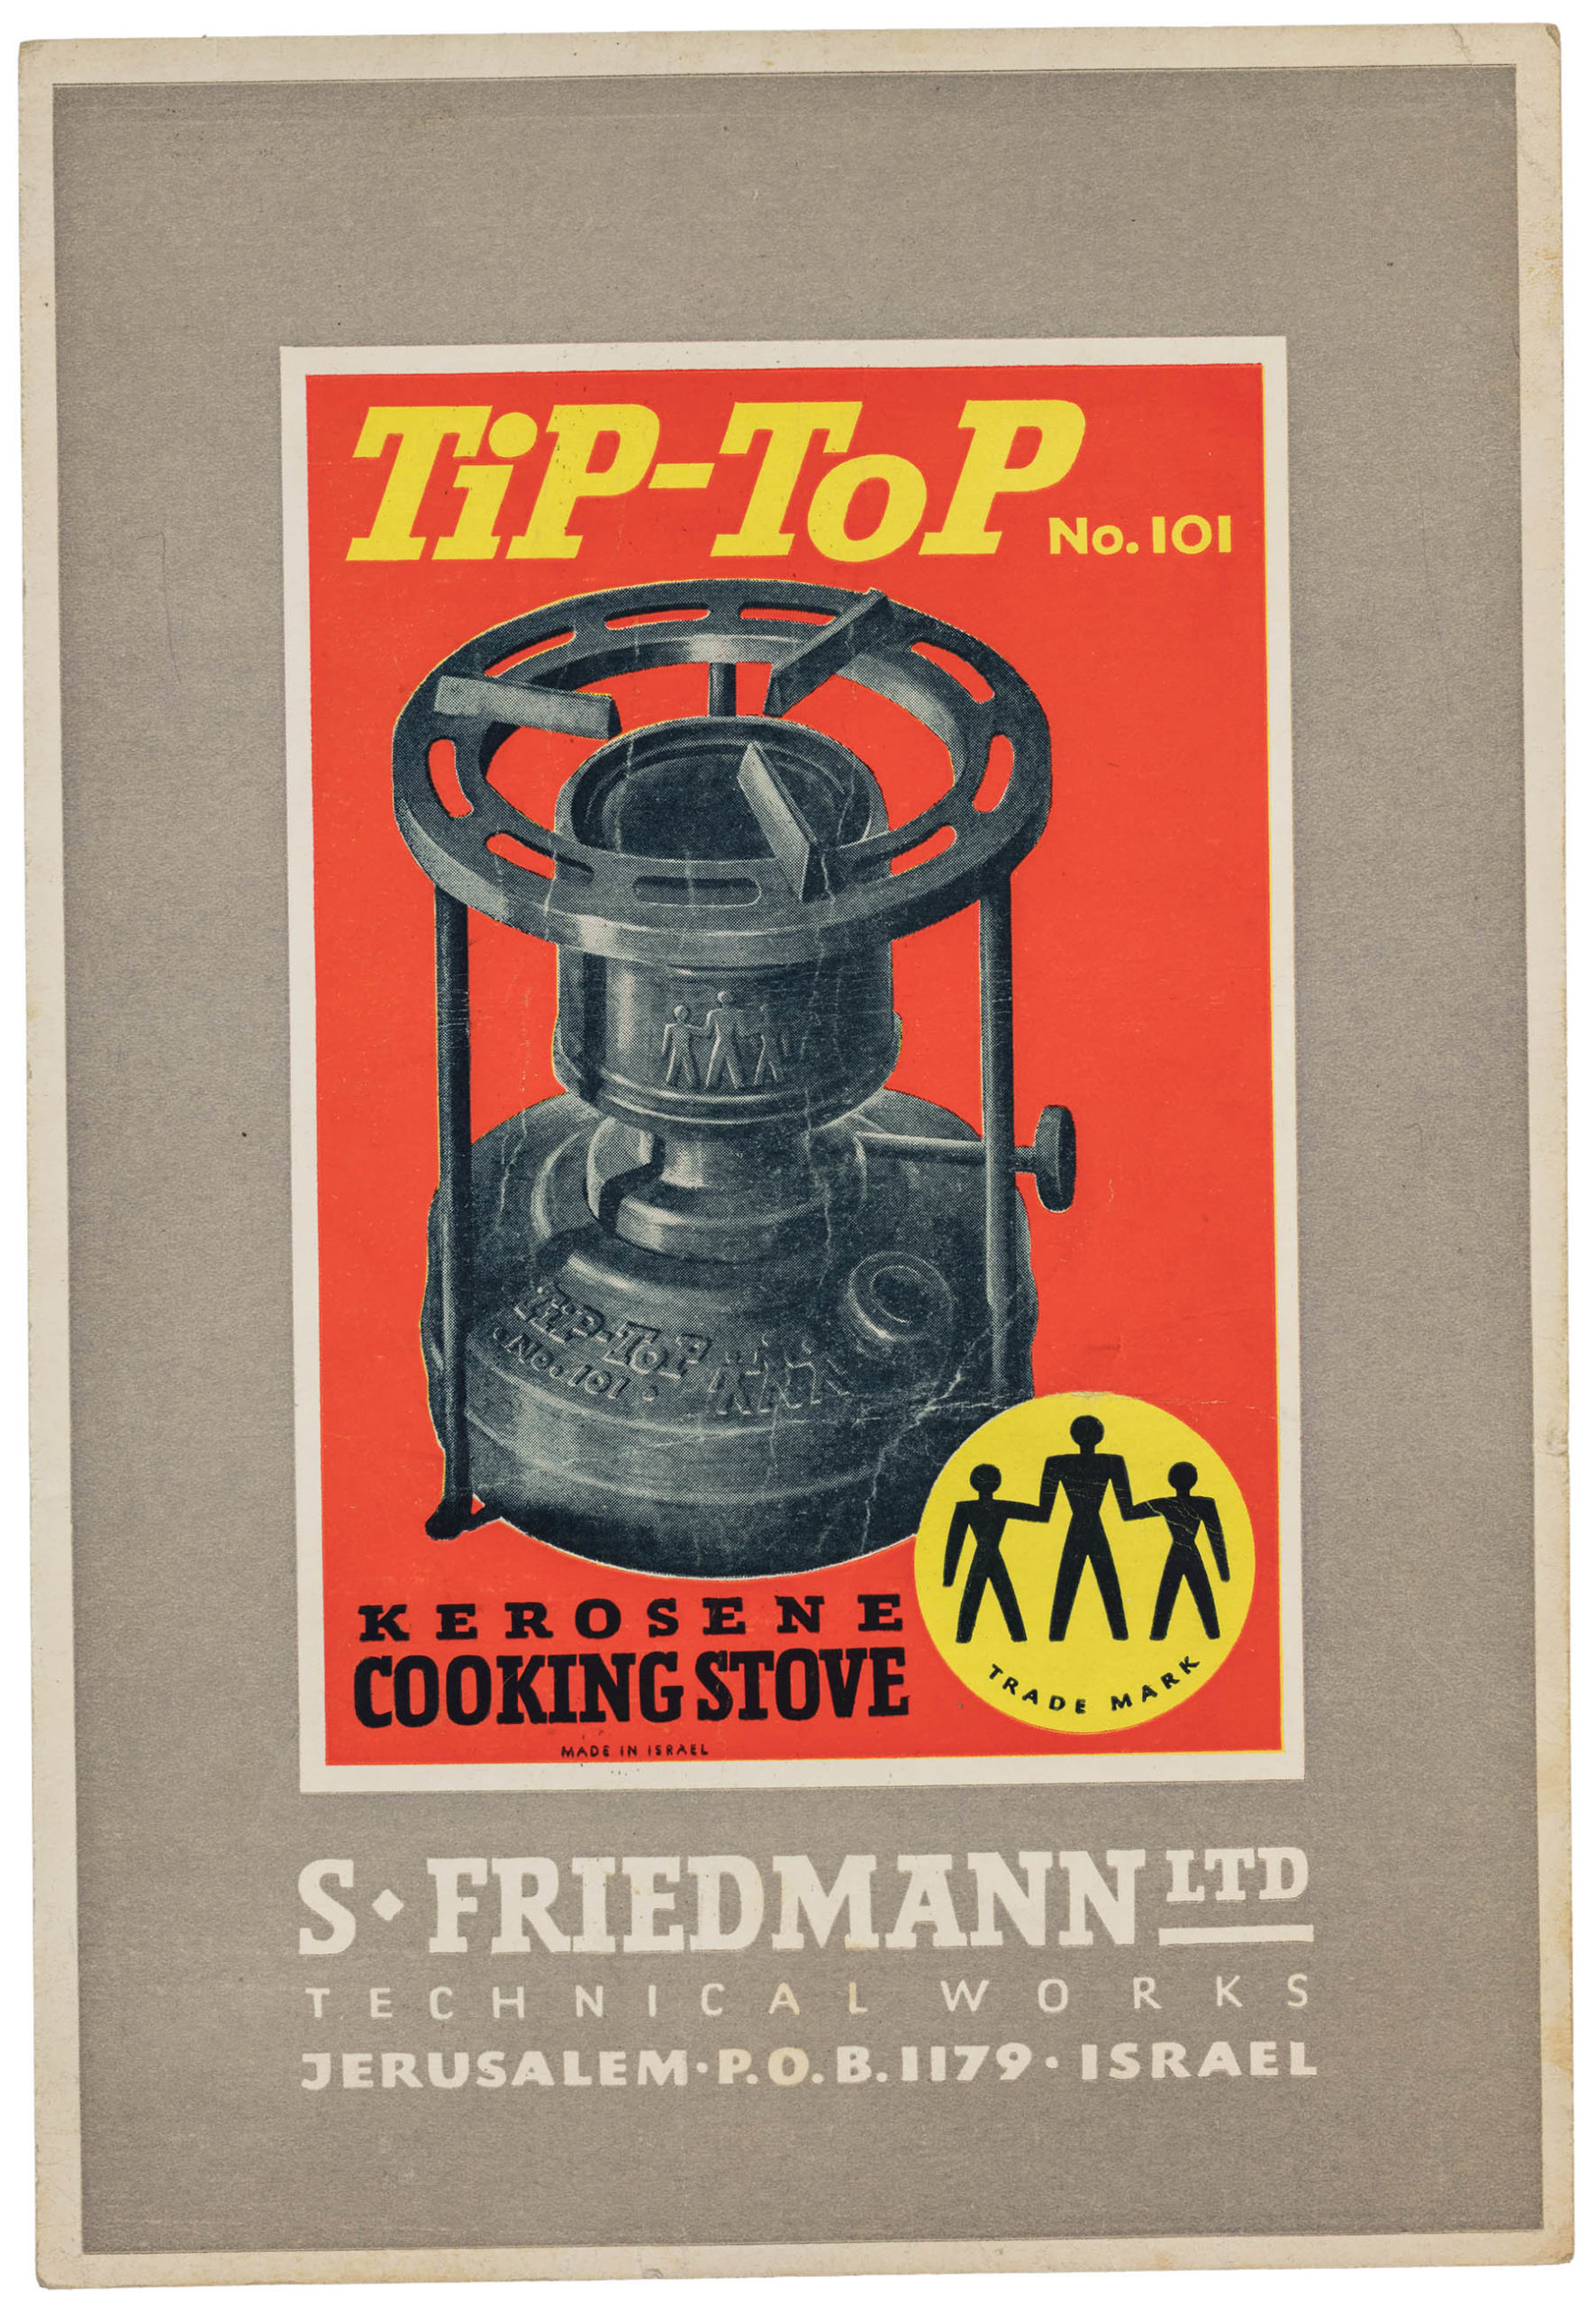 Poster for S. Friedmann Ltd.